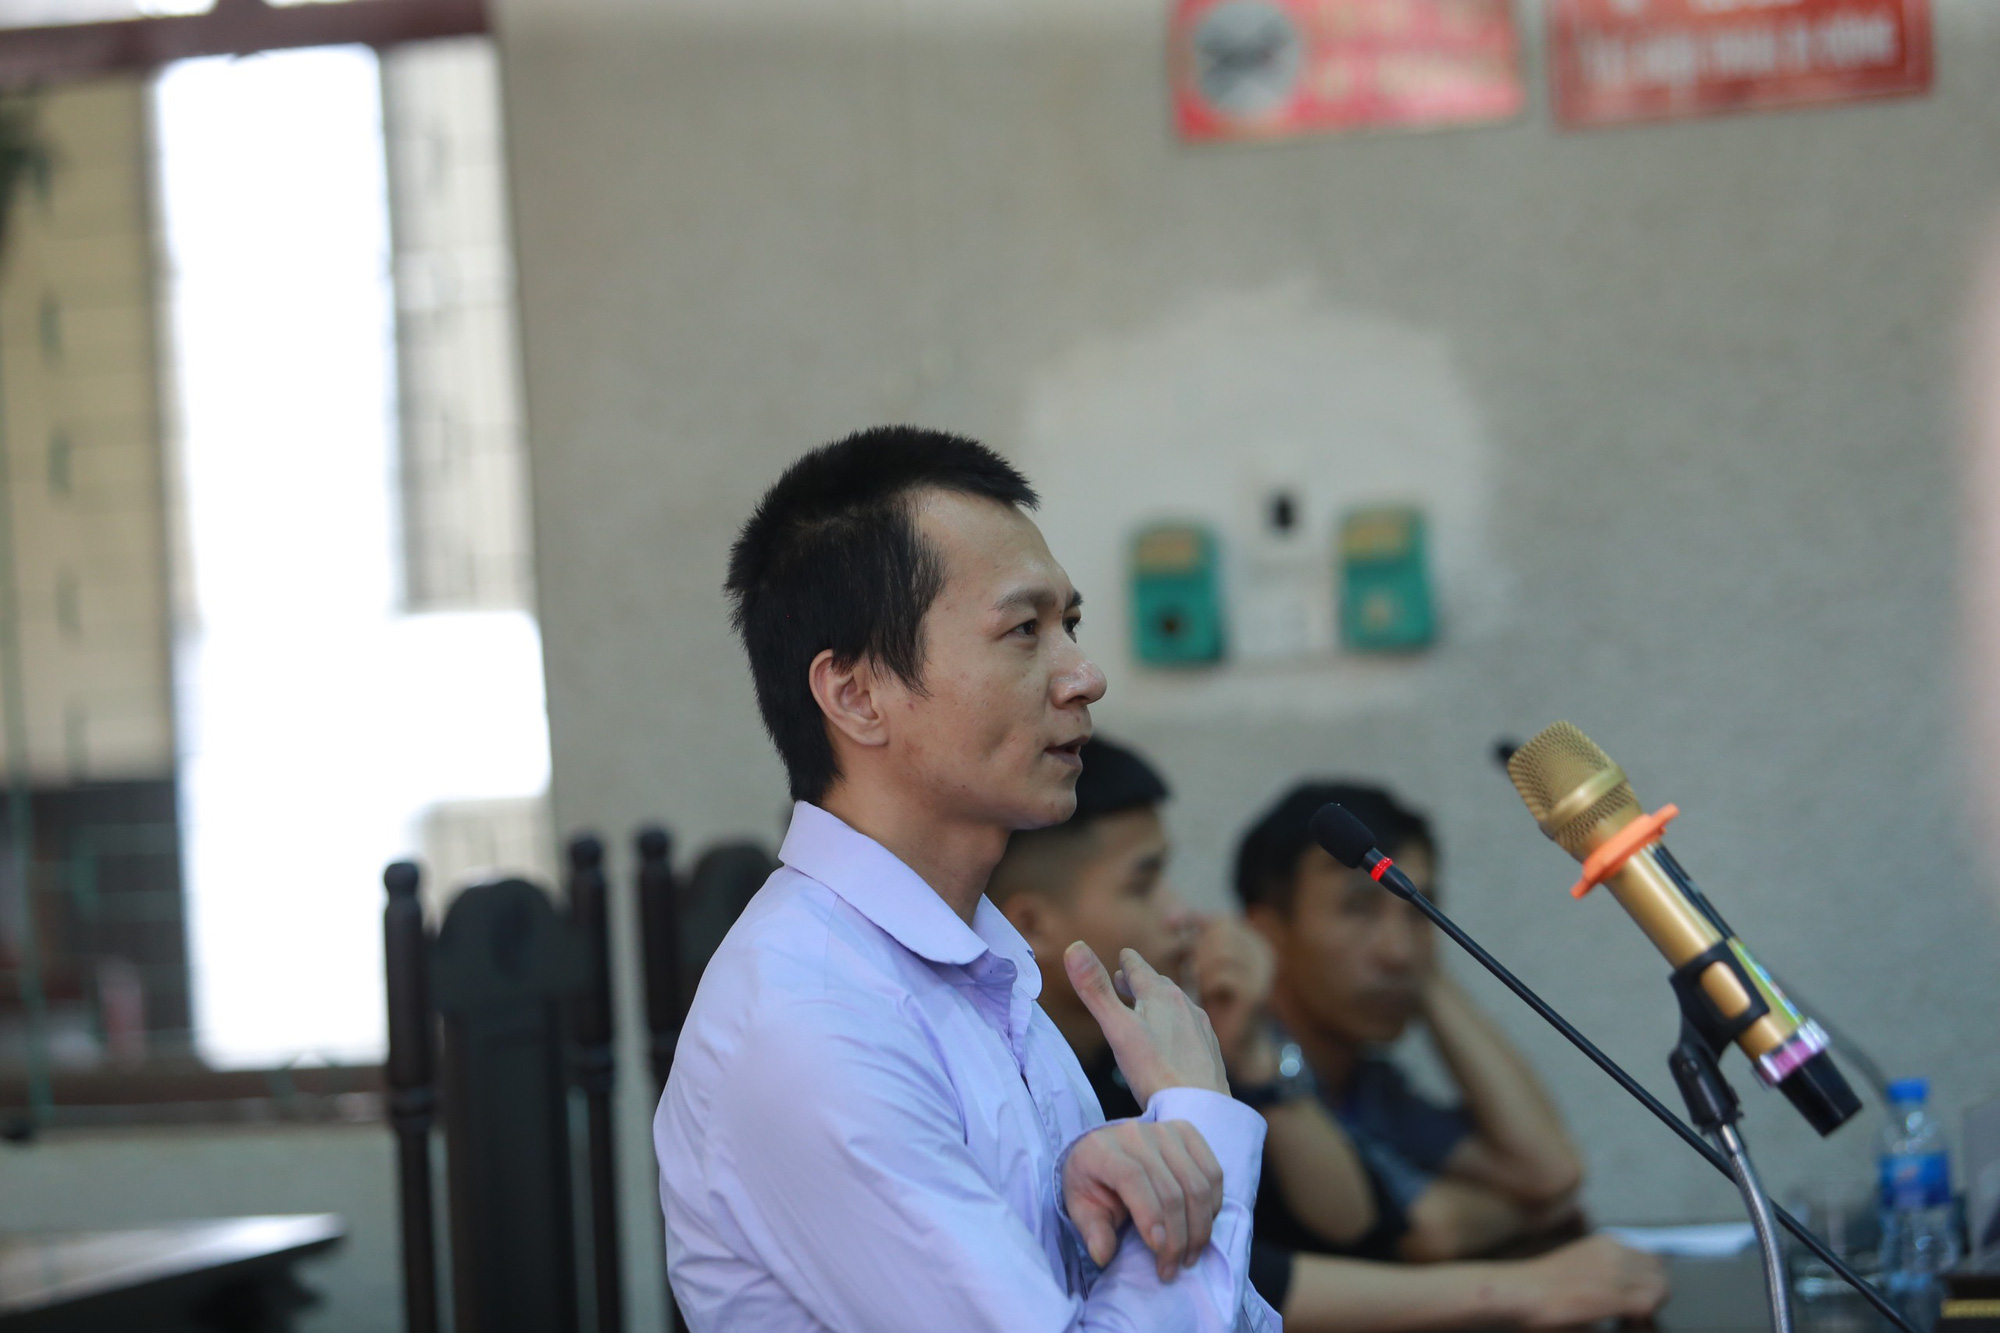 Nhóm sát nhân sát hại nữ sinh giao gà ở Điện Biên kêu oan nói bị ép cung, đánh đập: &quot;Bị cáo toàn bị đánh đập trước khi lấy lời khai&quot; - Ảnh 3.